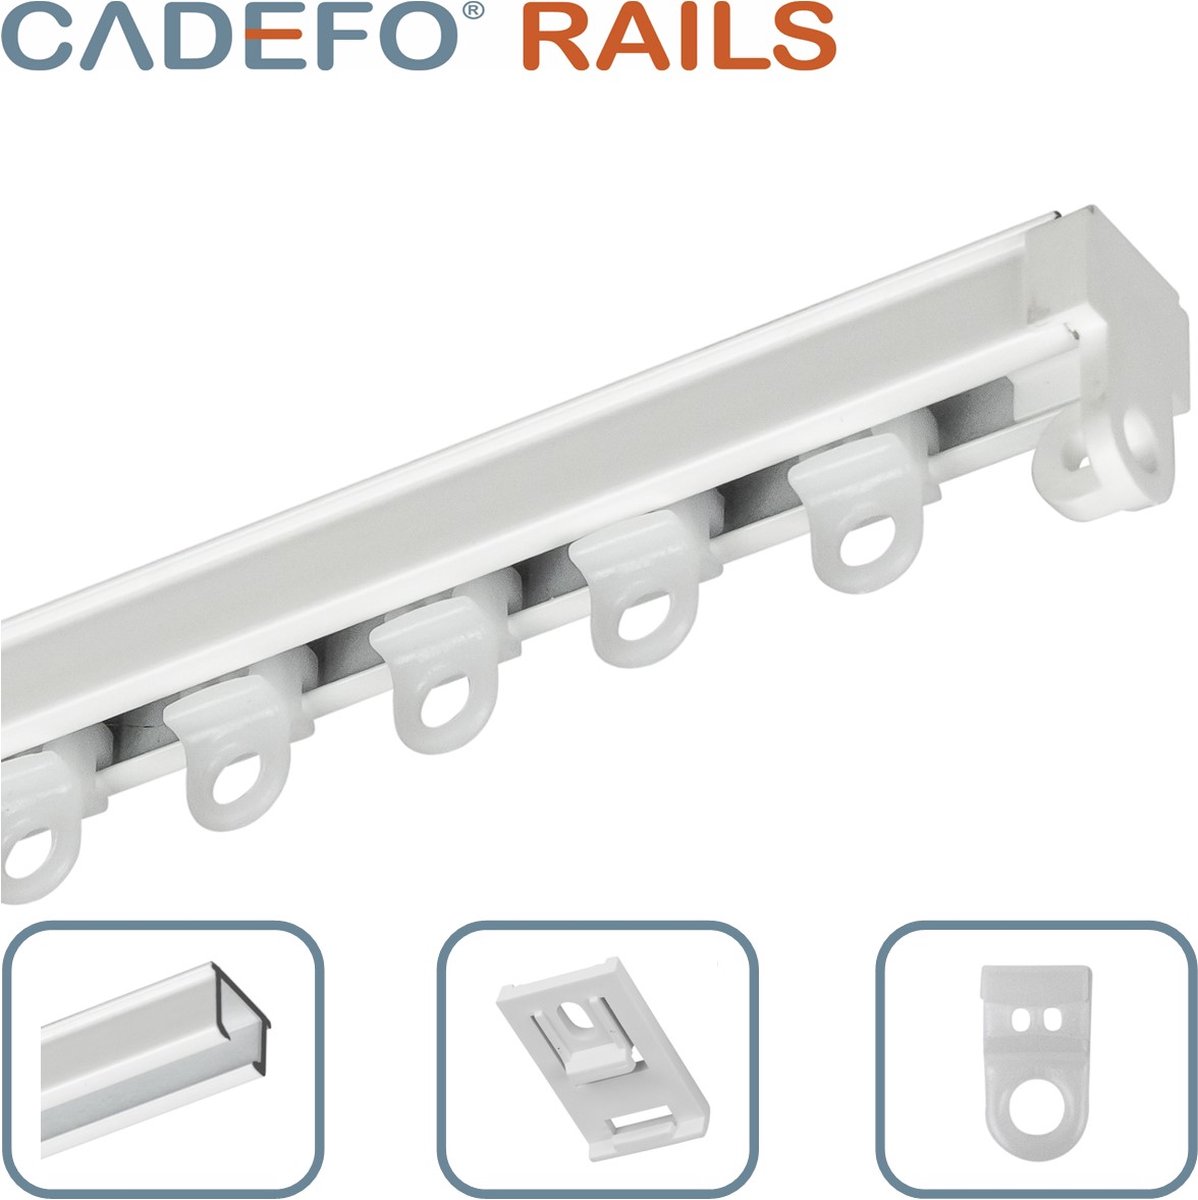 CADEFO RAILS (301 - 350 cm) Gordijnrails - Compleet op maat! - UIT 1 STUK - Leverbaar tot 6 meter - Plafondbevestiging - Lengte 313 cm